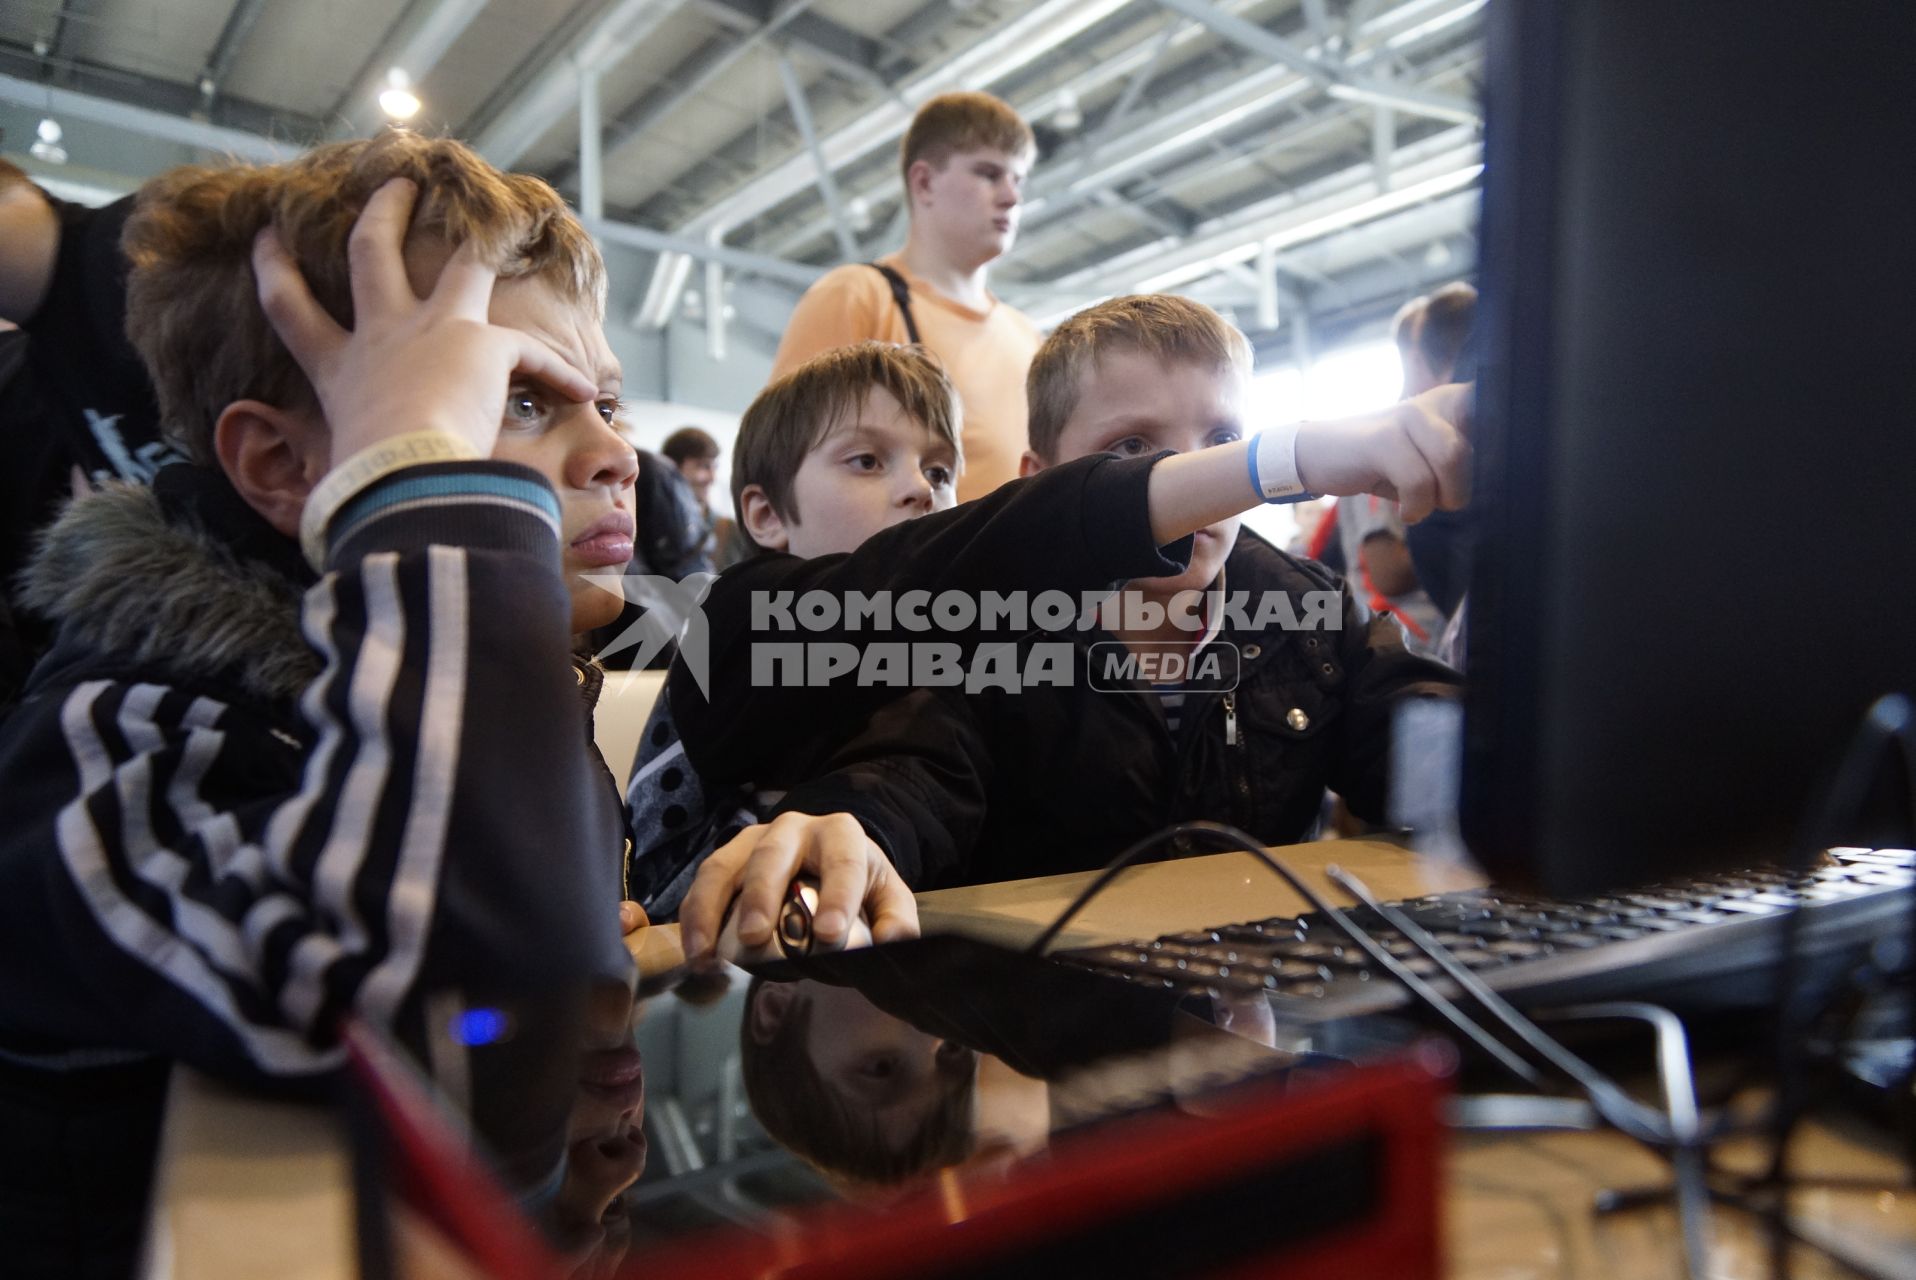 Екатеринбург. Участники виртуального шоу `Киберфест-2015` во время соревнований по компьютерным сетевым играм.